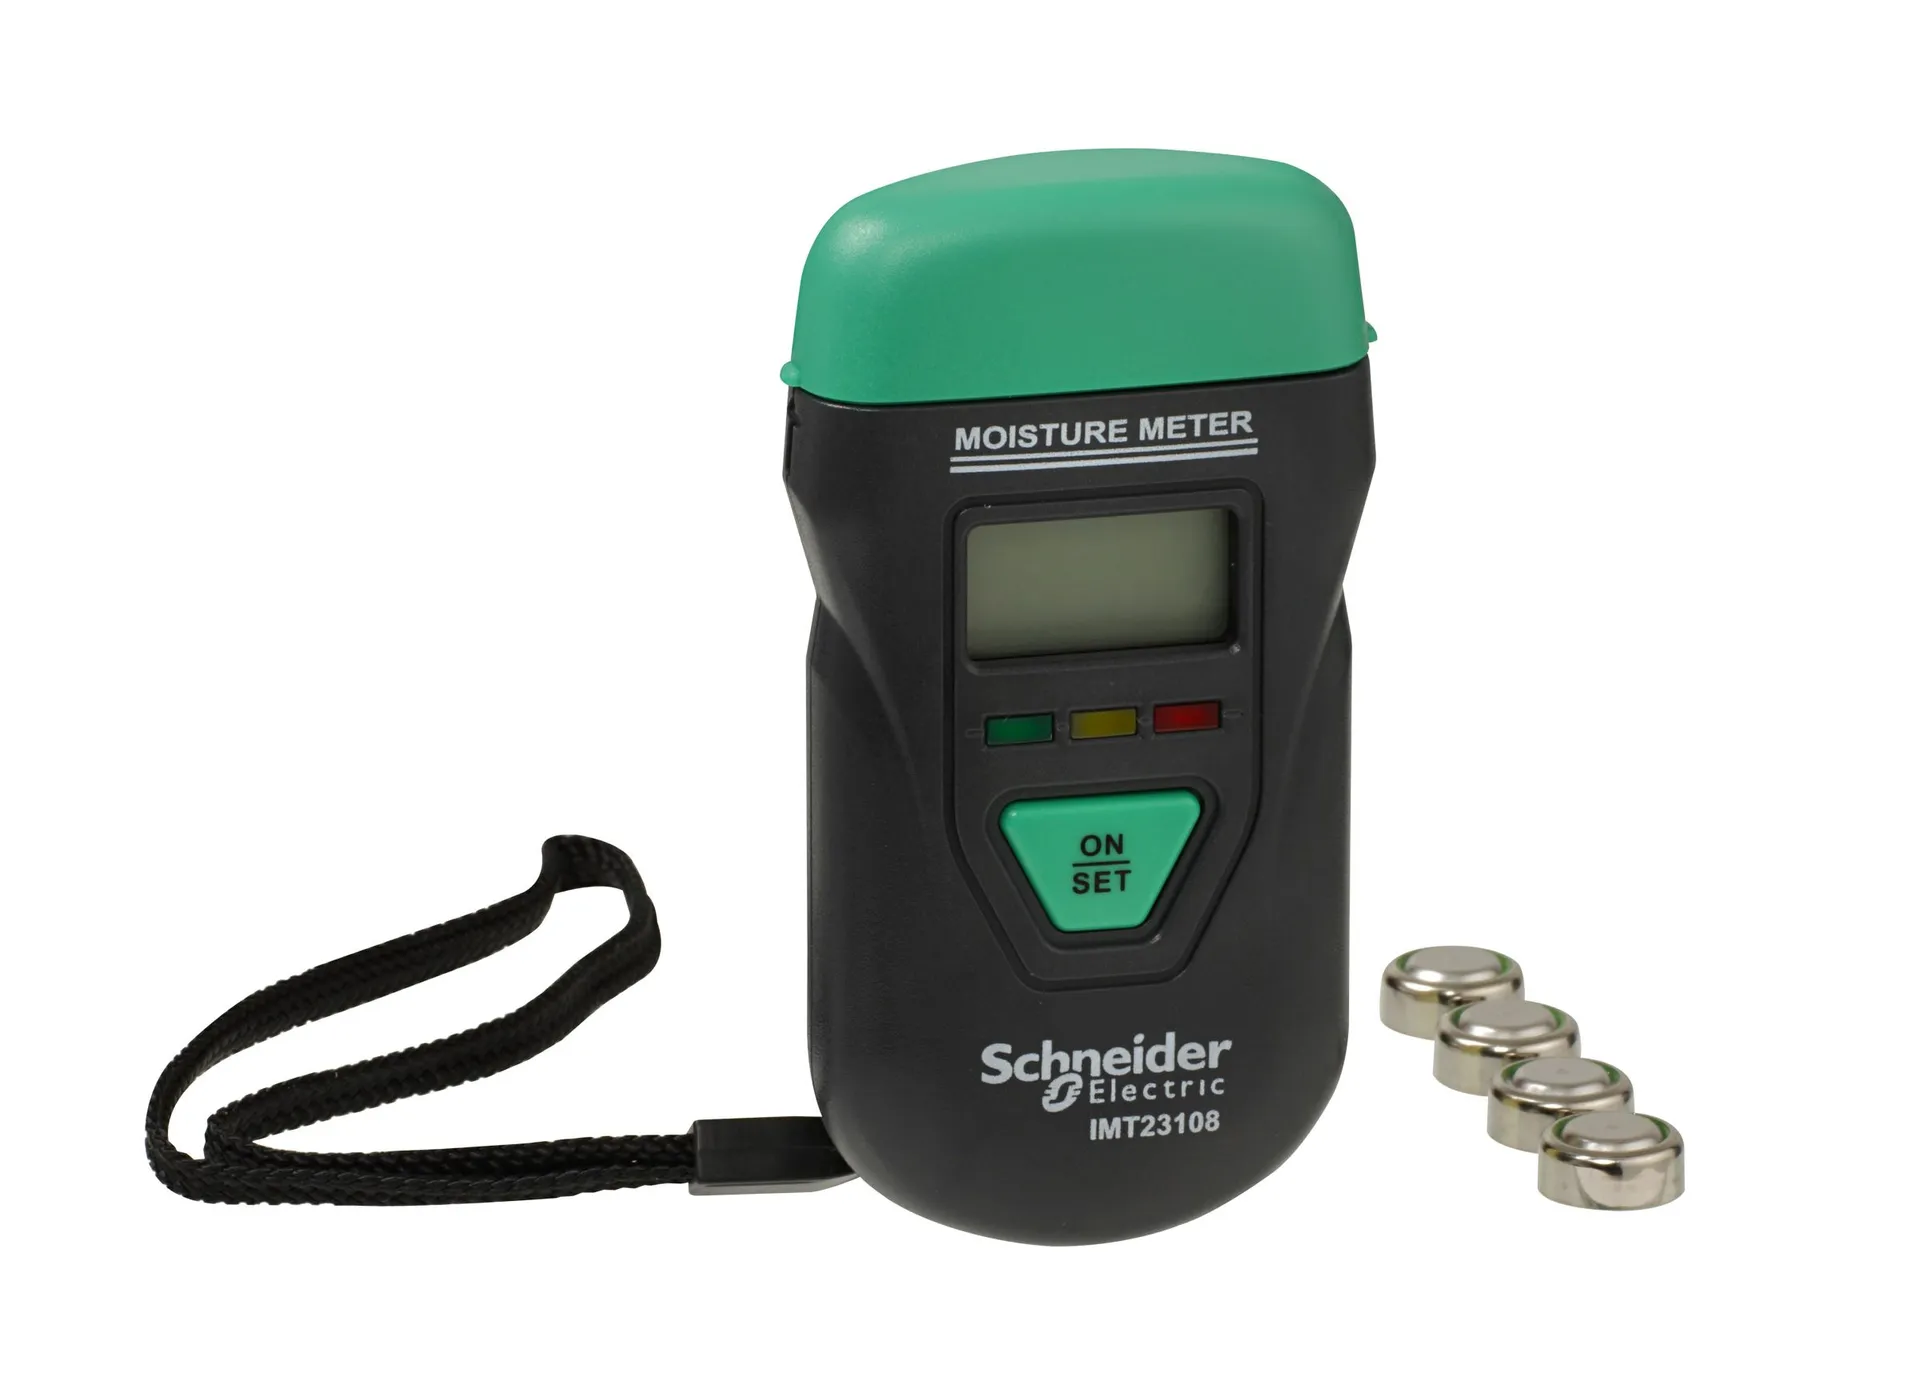 Schneider kosteusmittari digit lcd-näyttö - 1